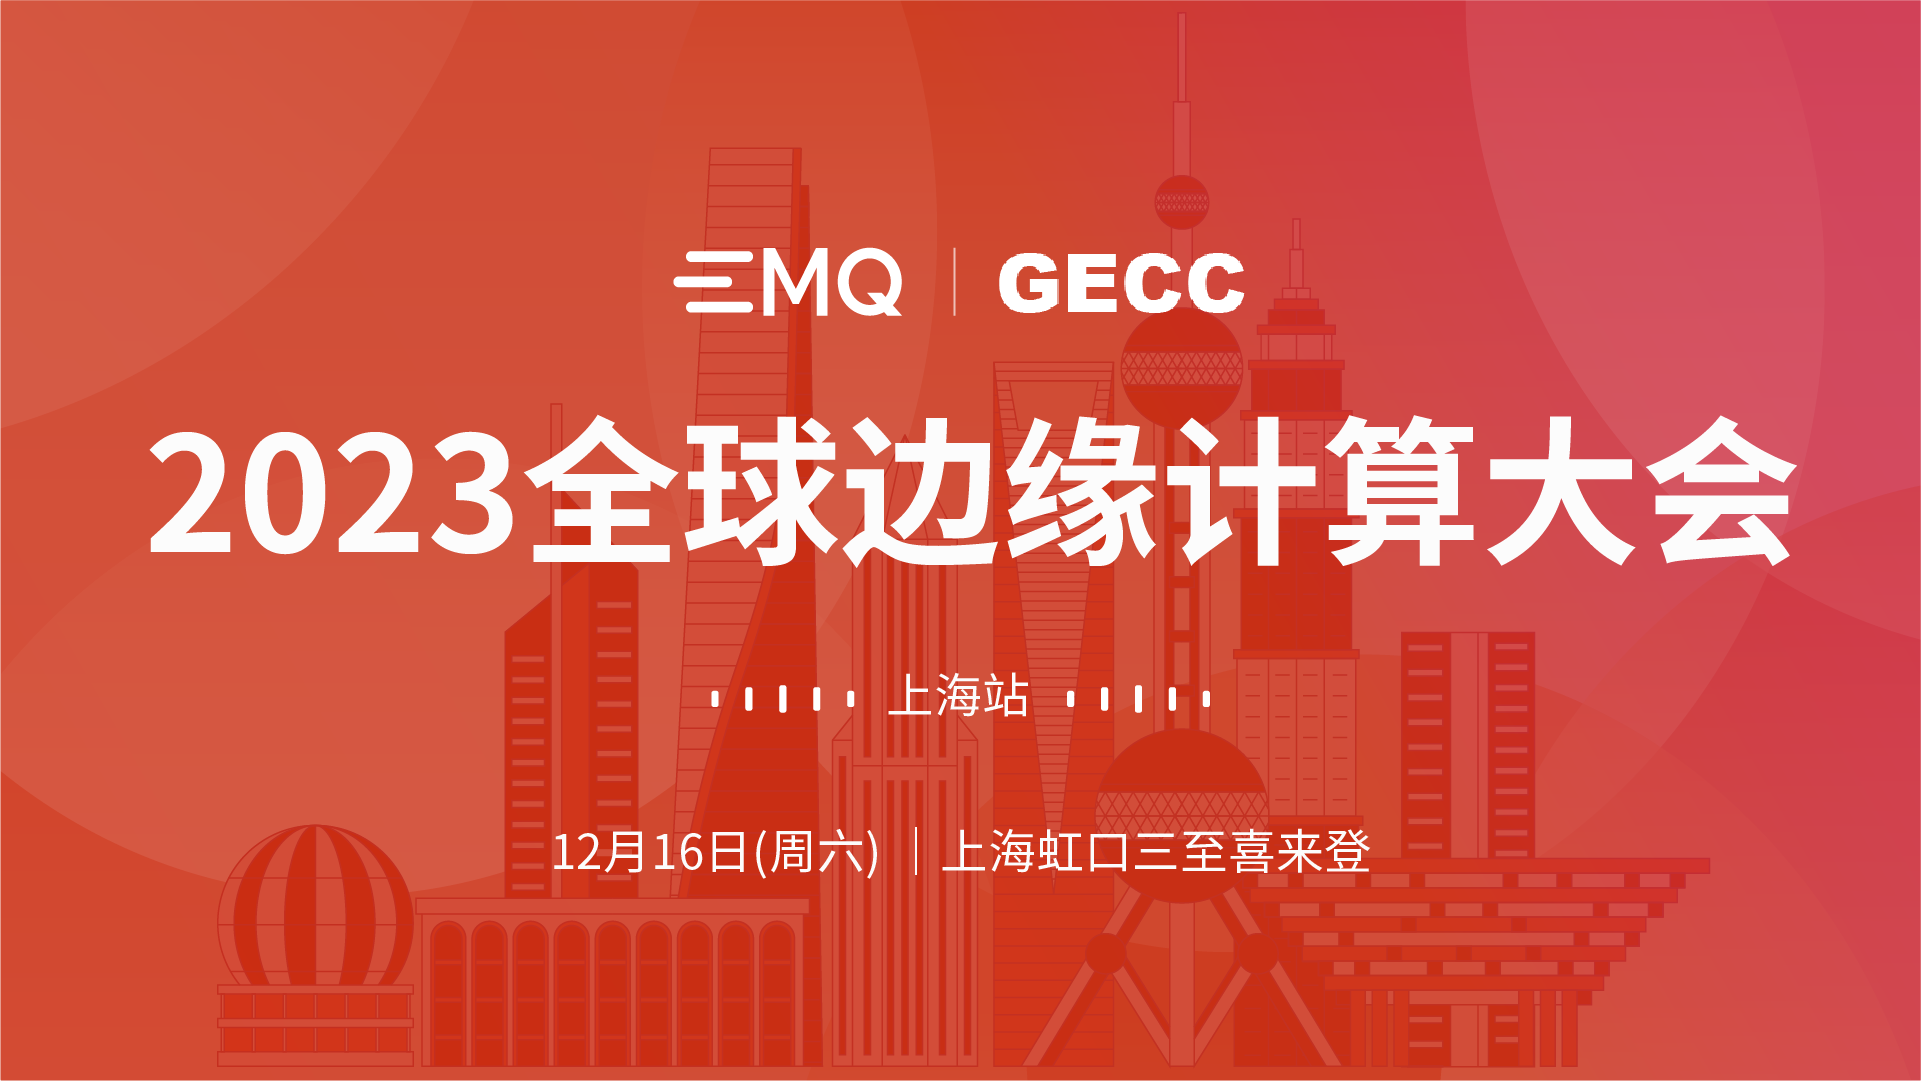 EMQ 与边缘计算社区共同举办全球边缘计算大会上海站，12月16日